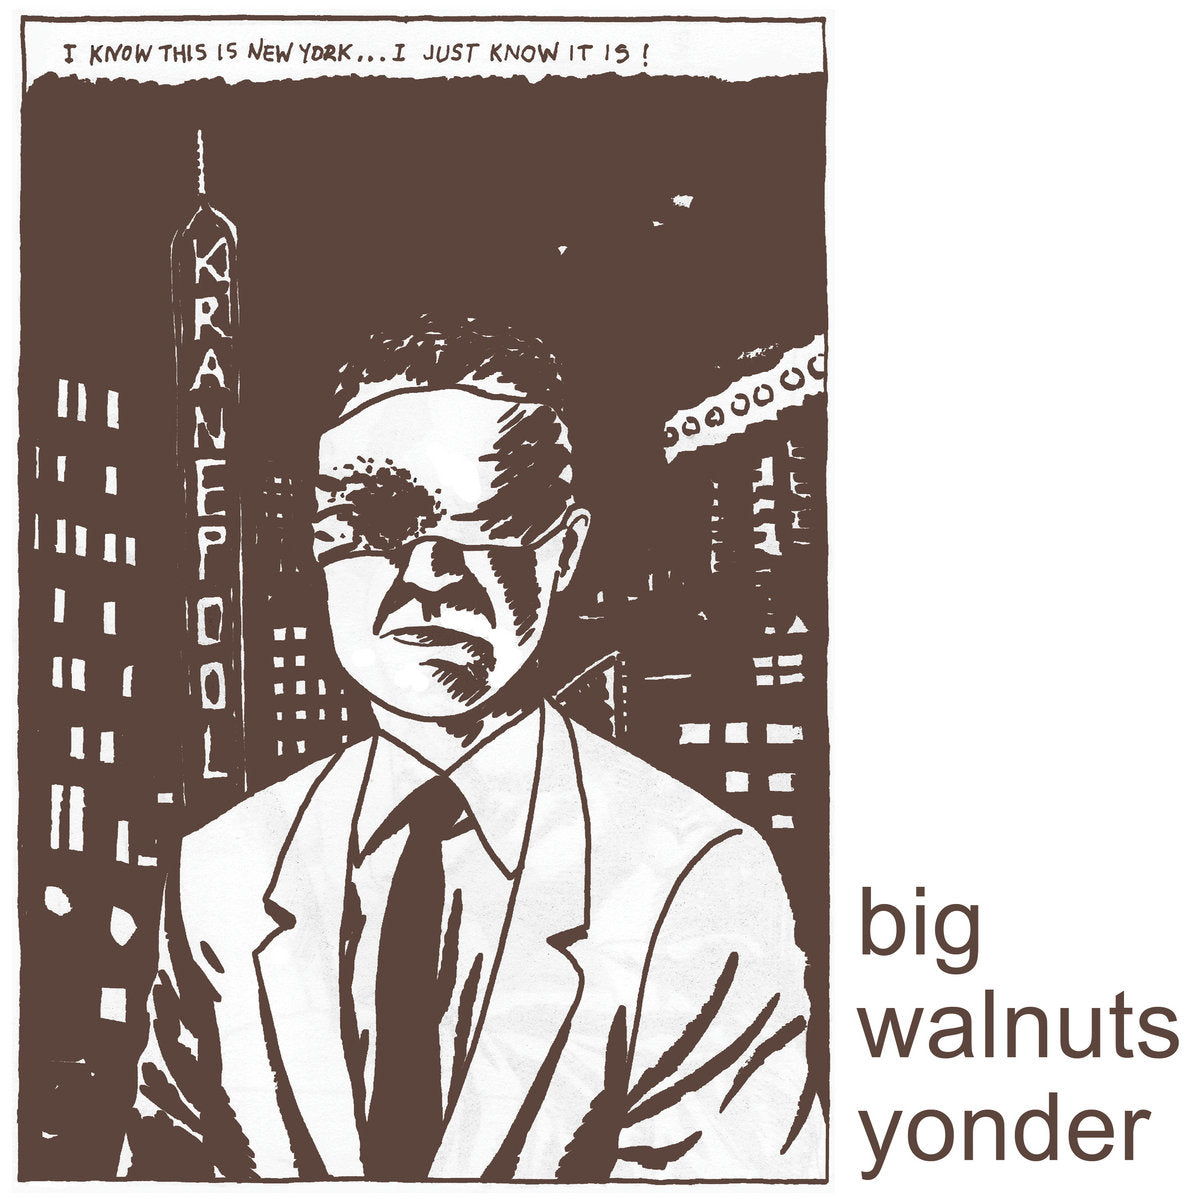 BIG WALNUTS YONDER "Big Walnuts Yonder" LP